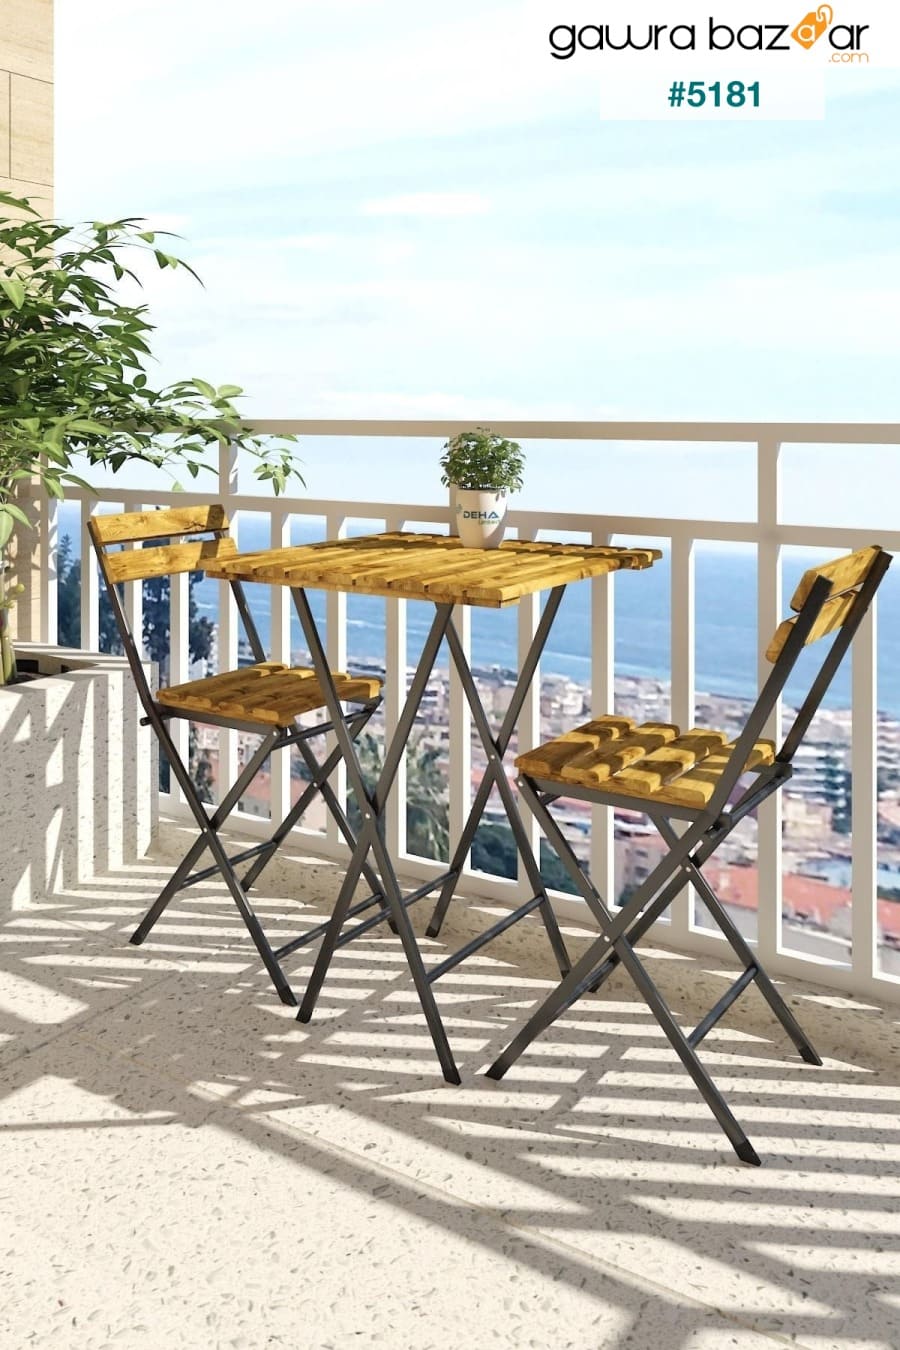 طقم كرسي طاولة بيسترو مصنوع من الخشب الطبيعي المطلي بهيكل معدني مطلي للحديقة والشرفات الصغيرة DEHALİMİTED 1